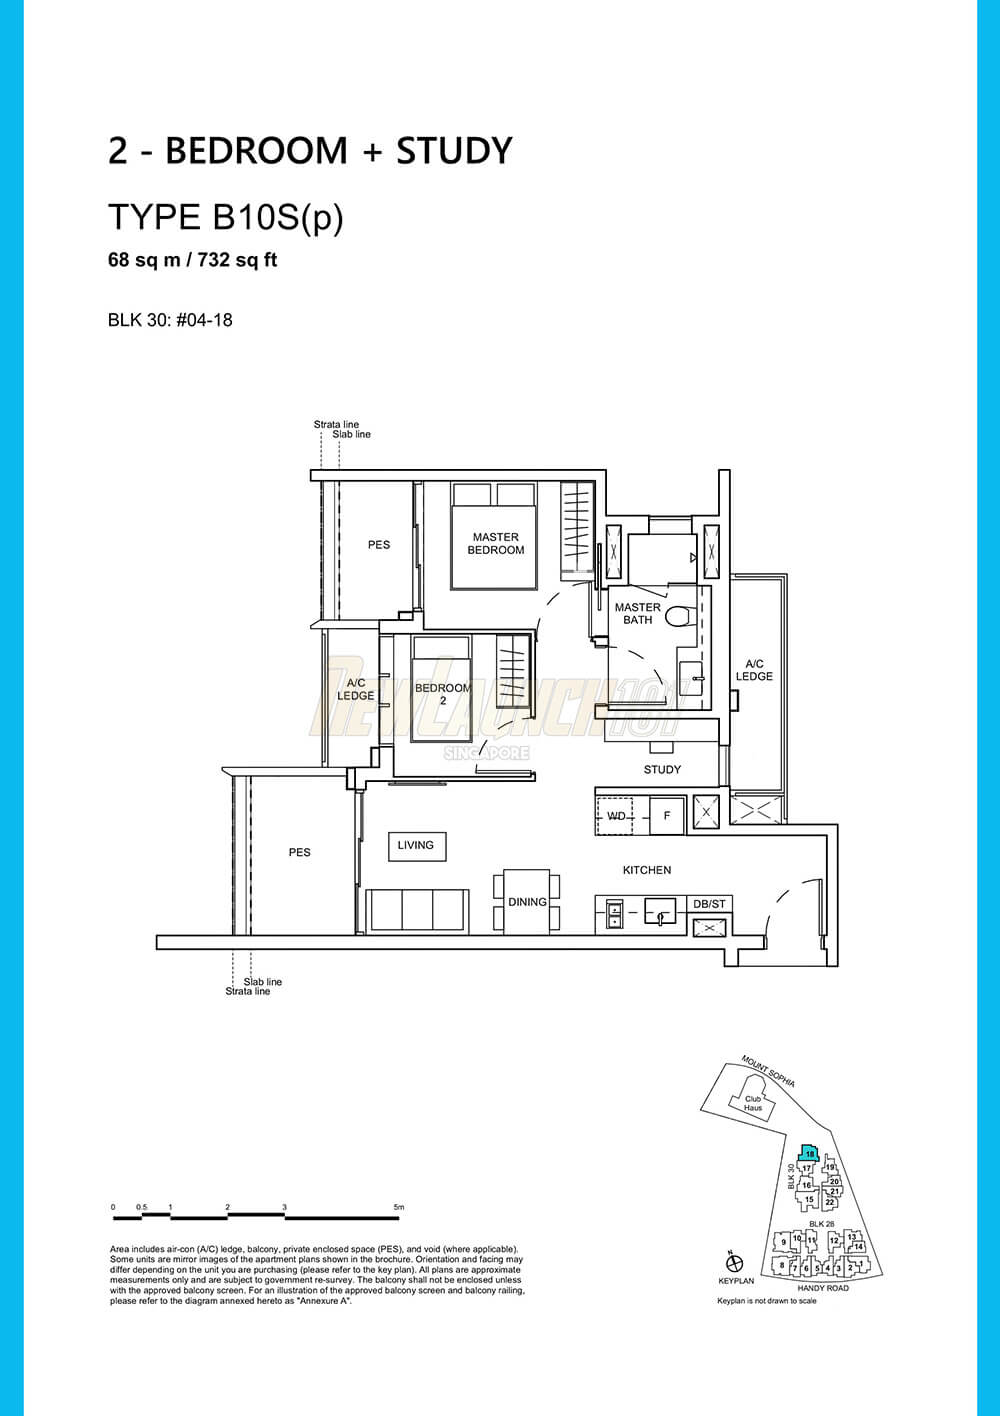 Haus on Handy Floor Plan 2-Bedroom Study Type B10Sp